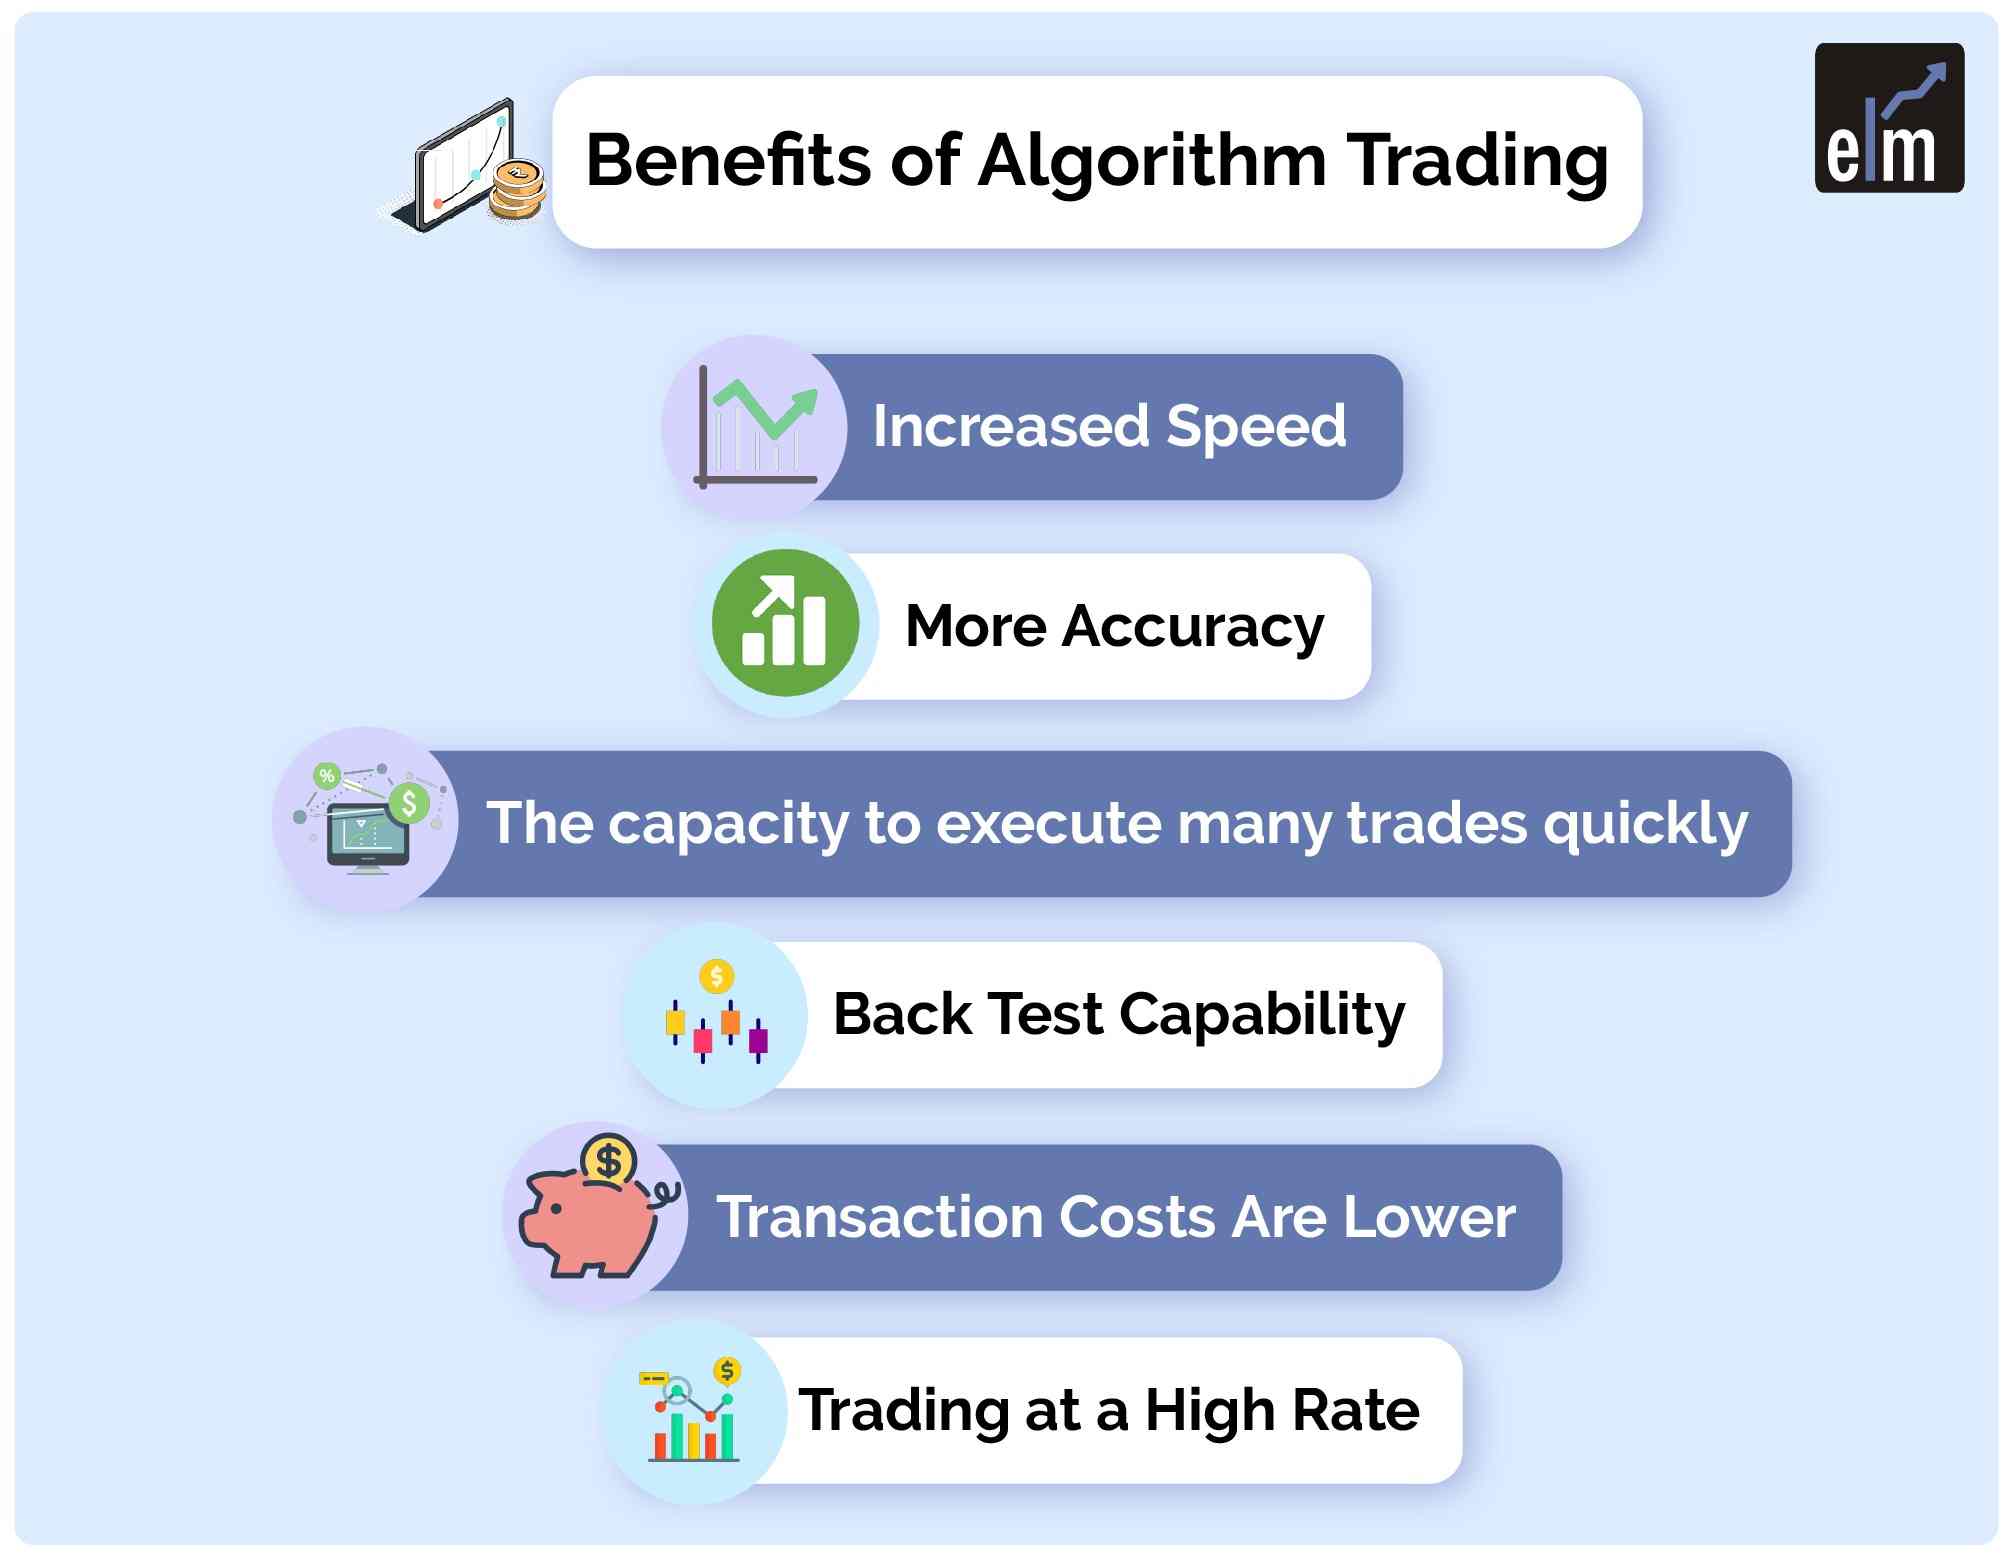 Benefits of Algo Trading